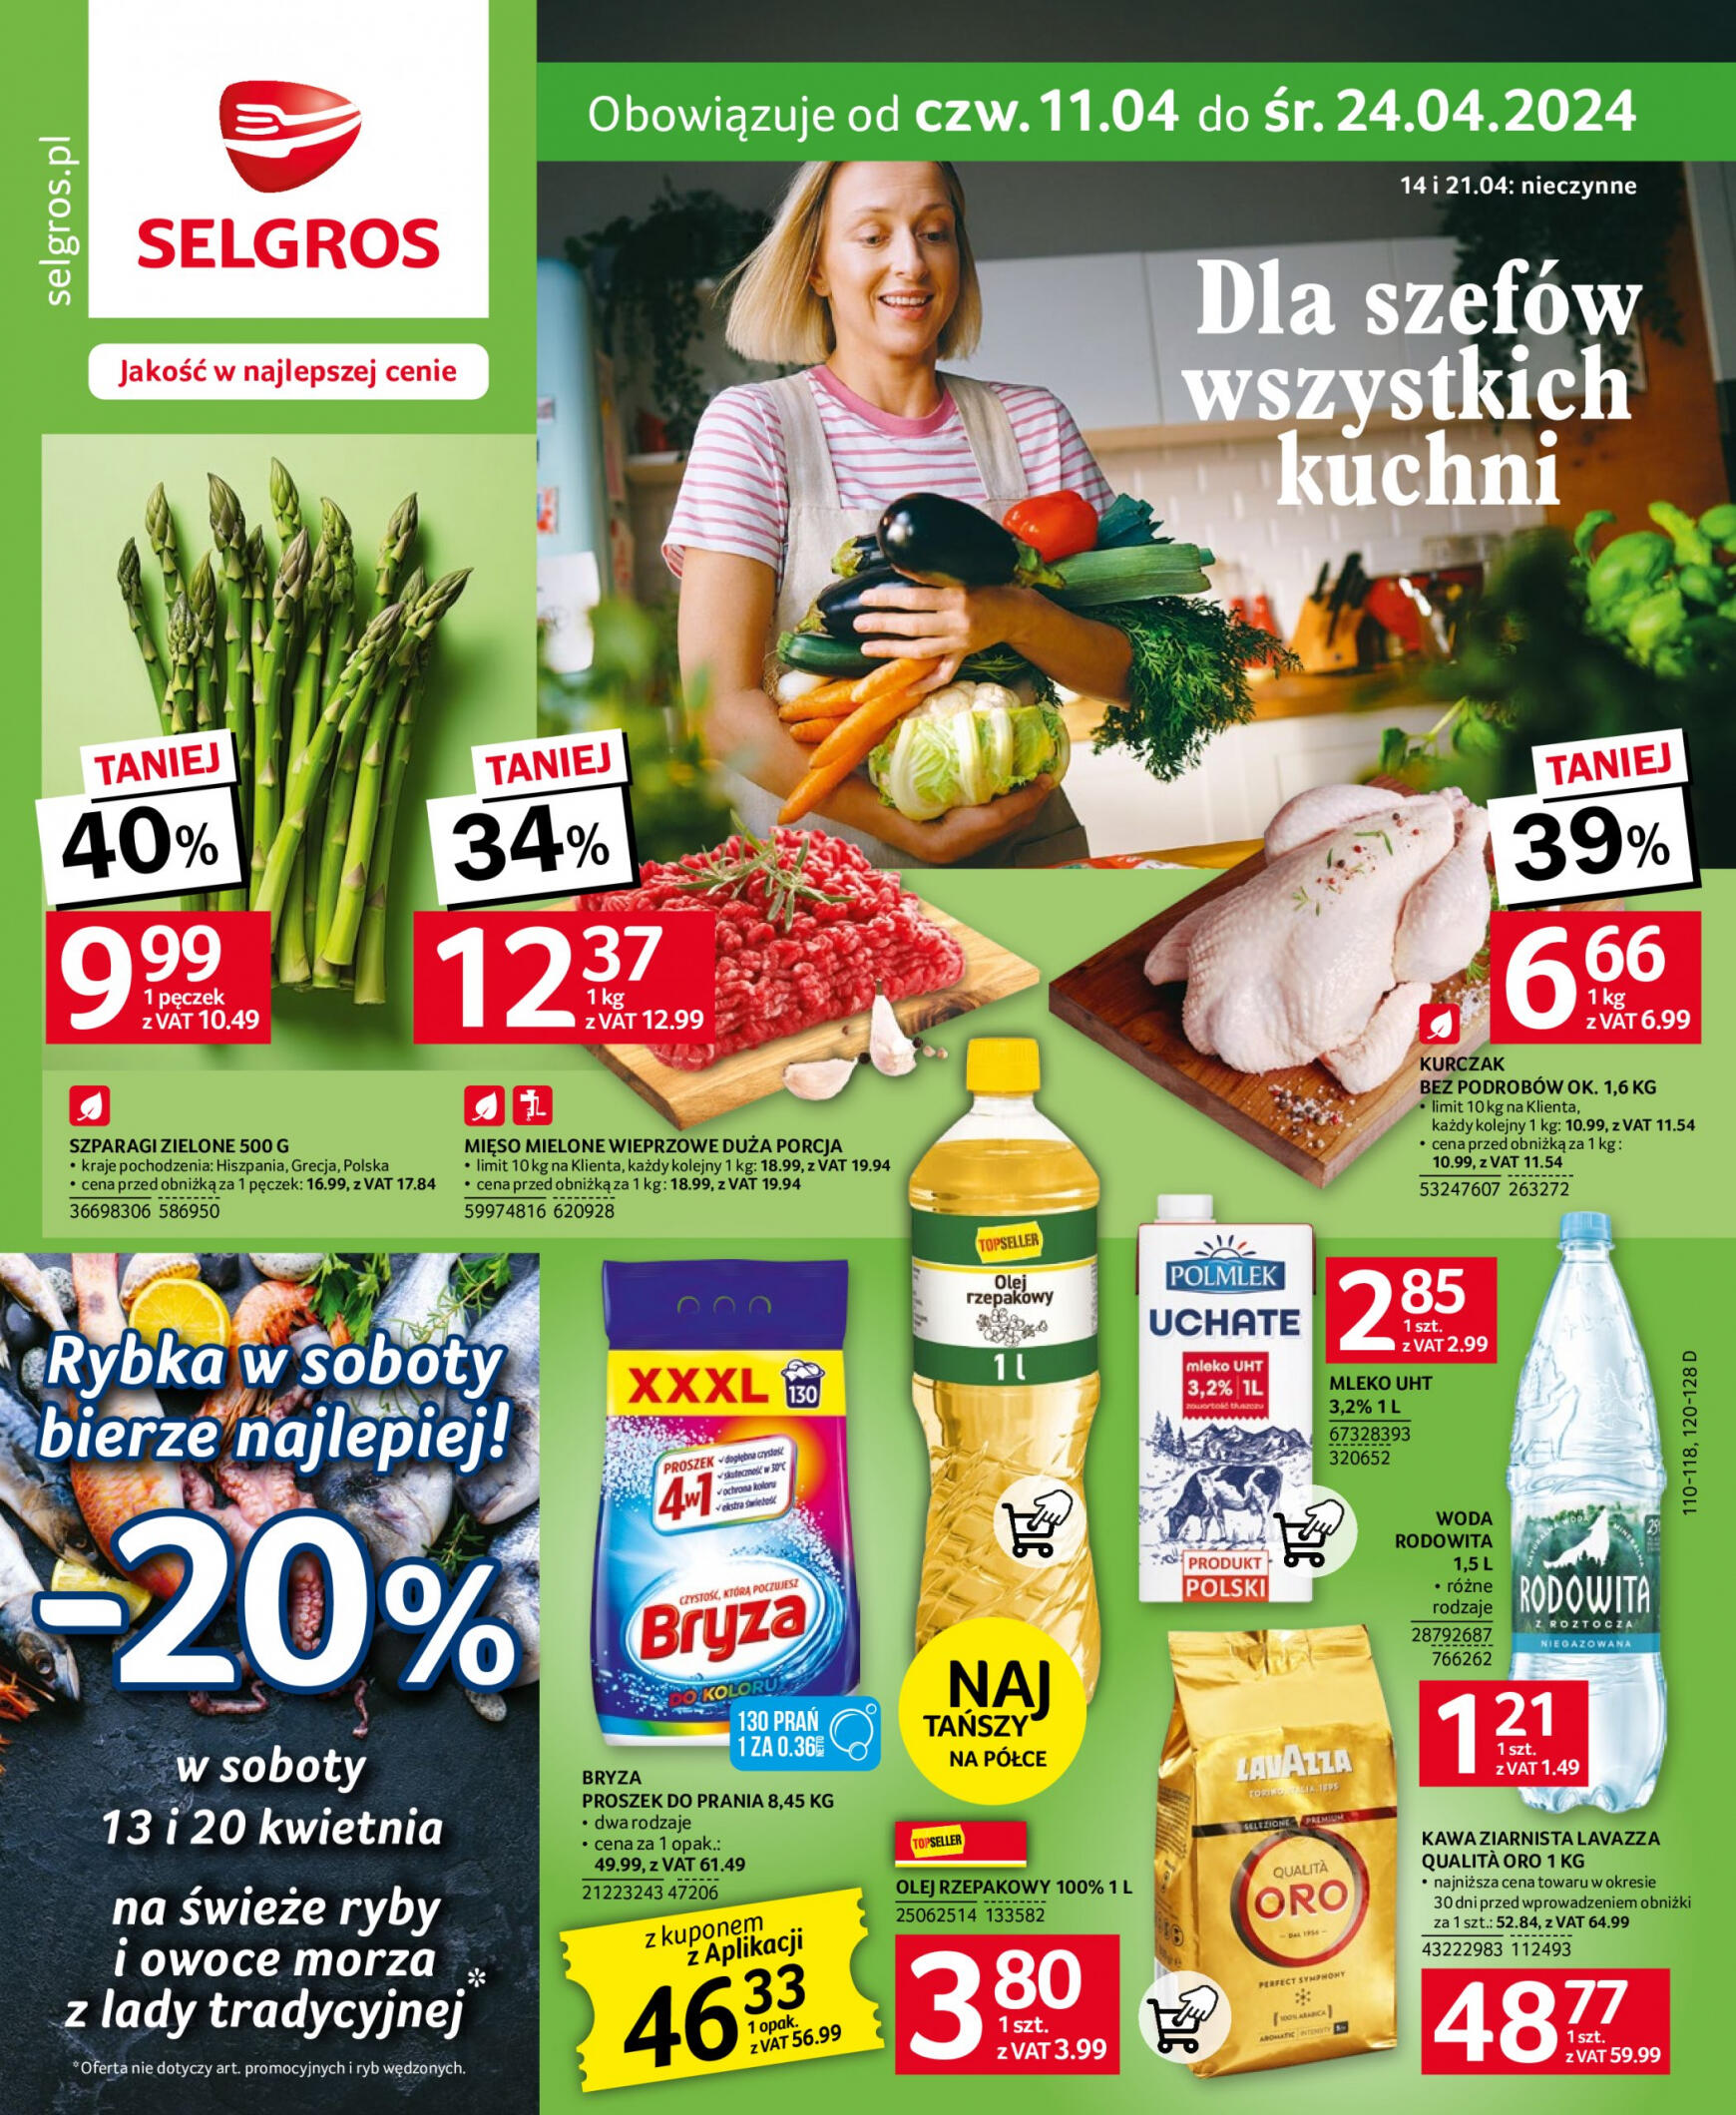 selgros - Selgros cash&carry - Selgros - Oferta spożywcza gazetka aktualna ważna od 11.04. - 24.04.